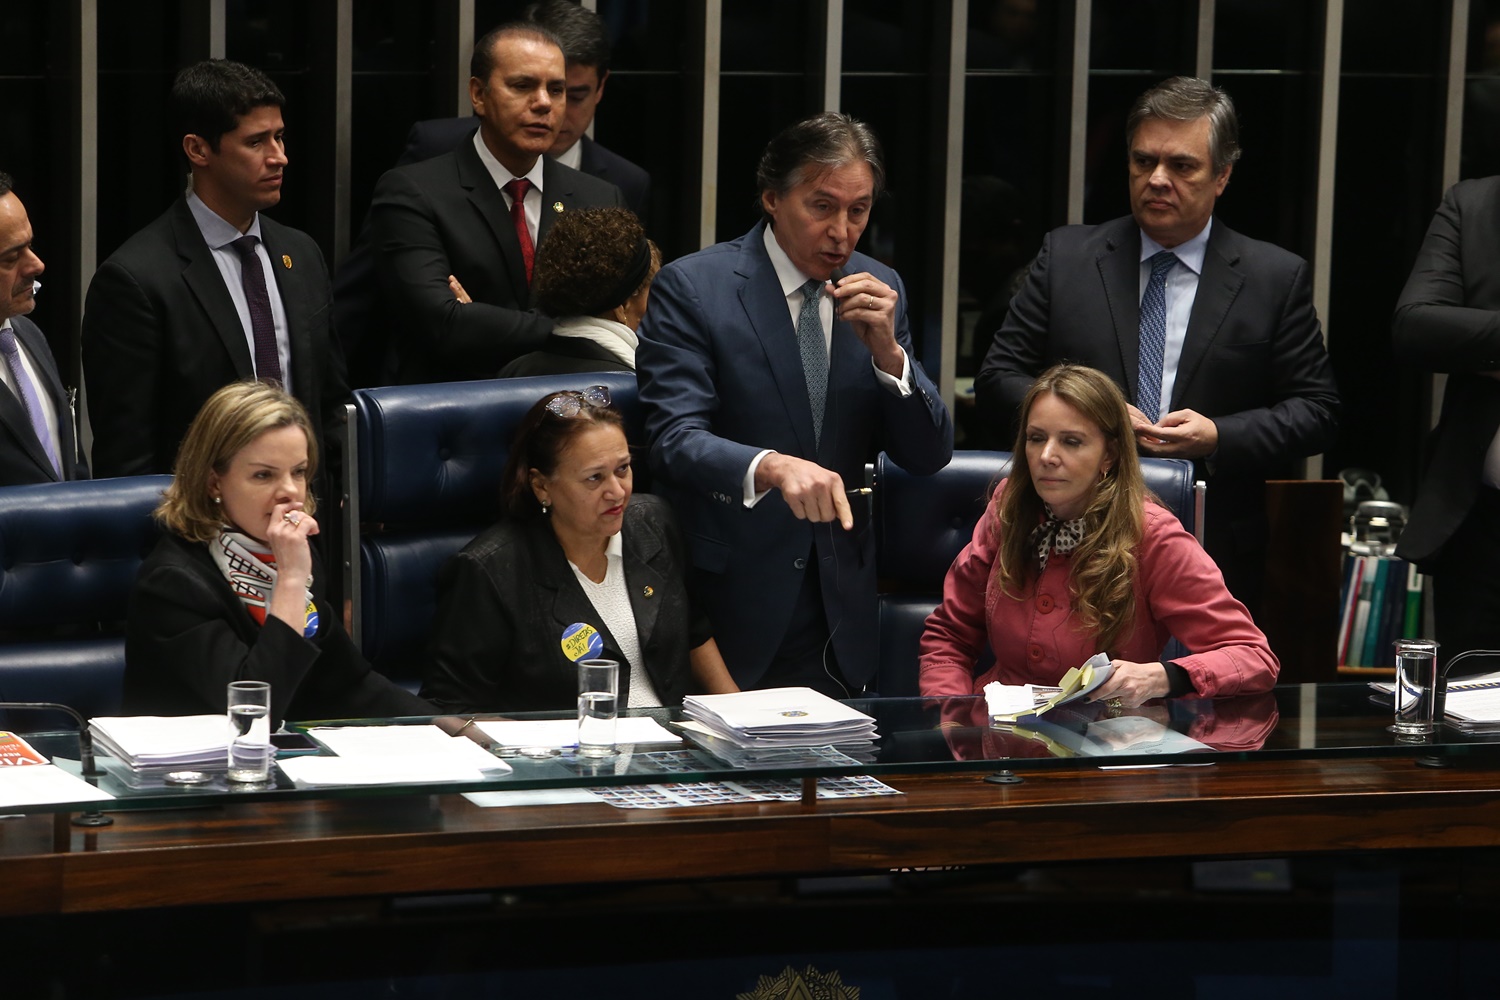 Senadoras ocupam mesa no Senado e Eunício suspende sessão